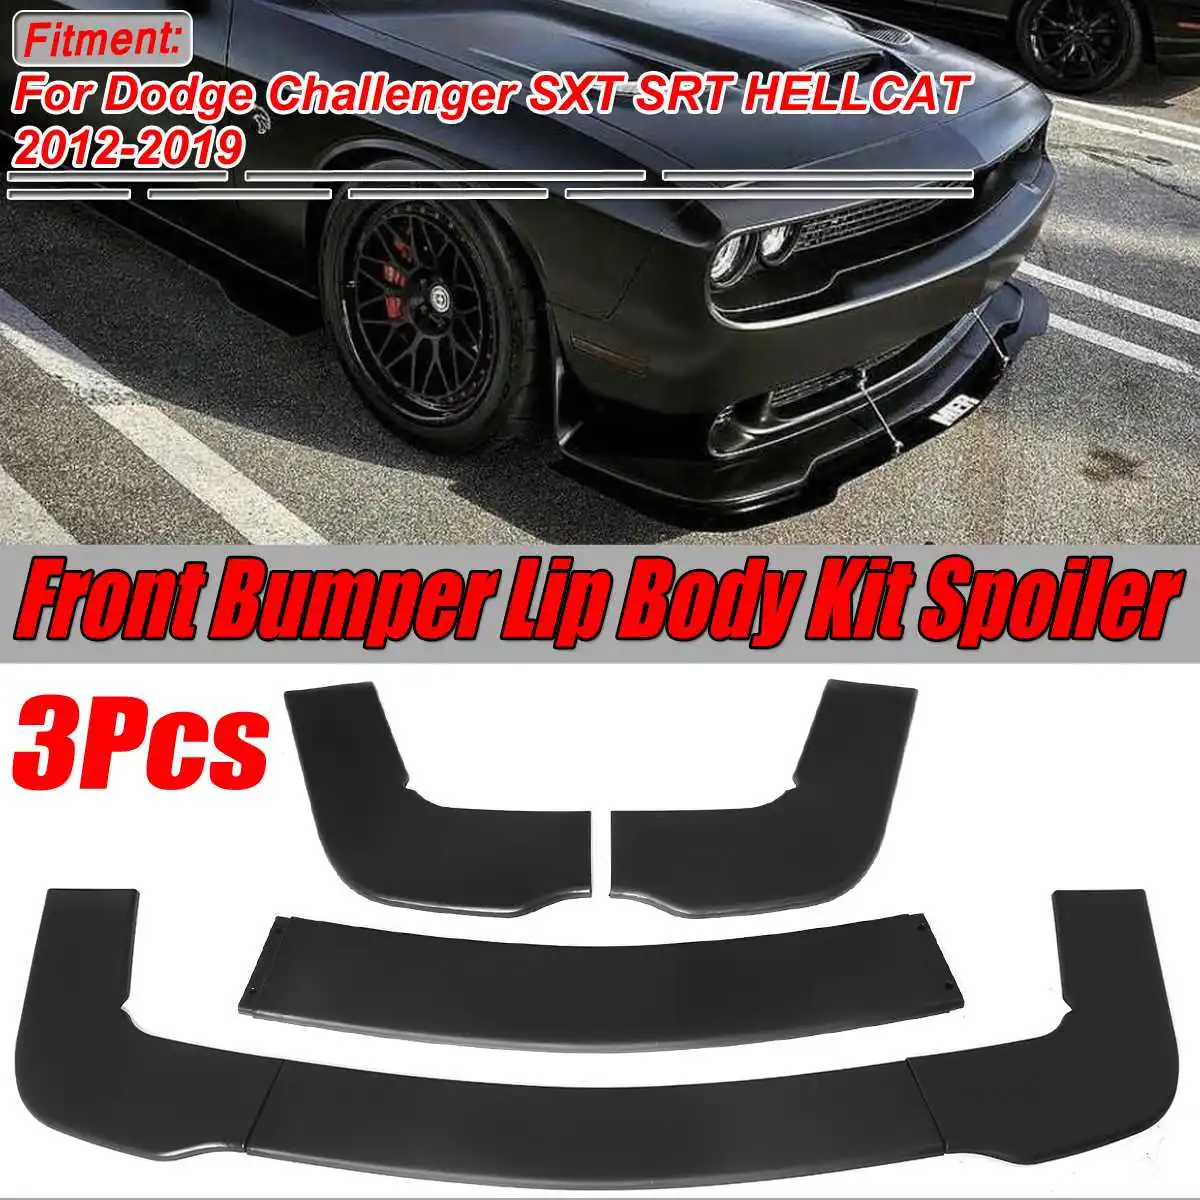 

Матовый черный 3 шт. сплиттер для переднего бампера автомобиля, спойлер, диффузор, защитная крышка, отделка для Dodge Challenger SXT SRT HELLCAT 2012-2019